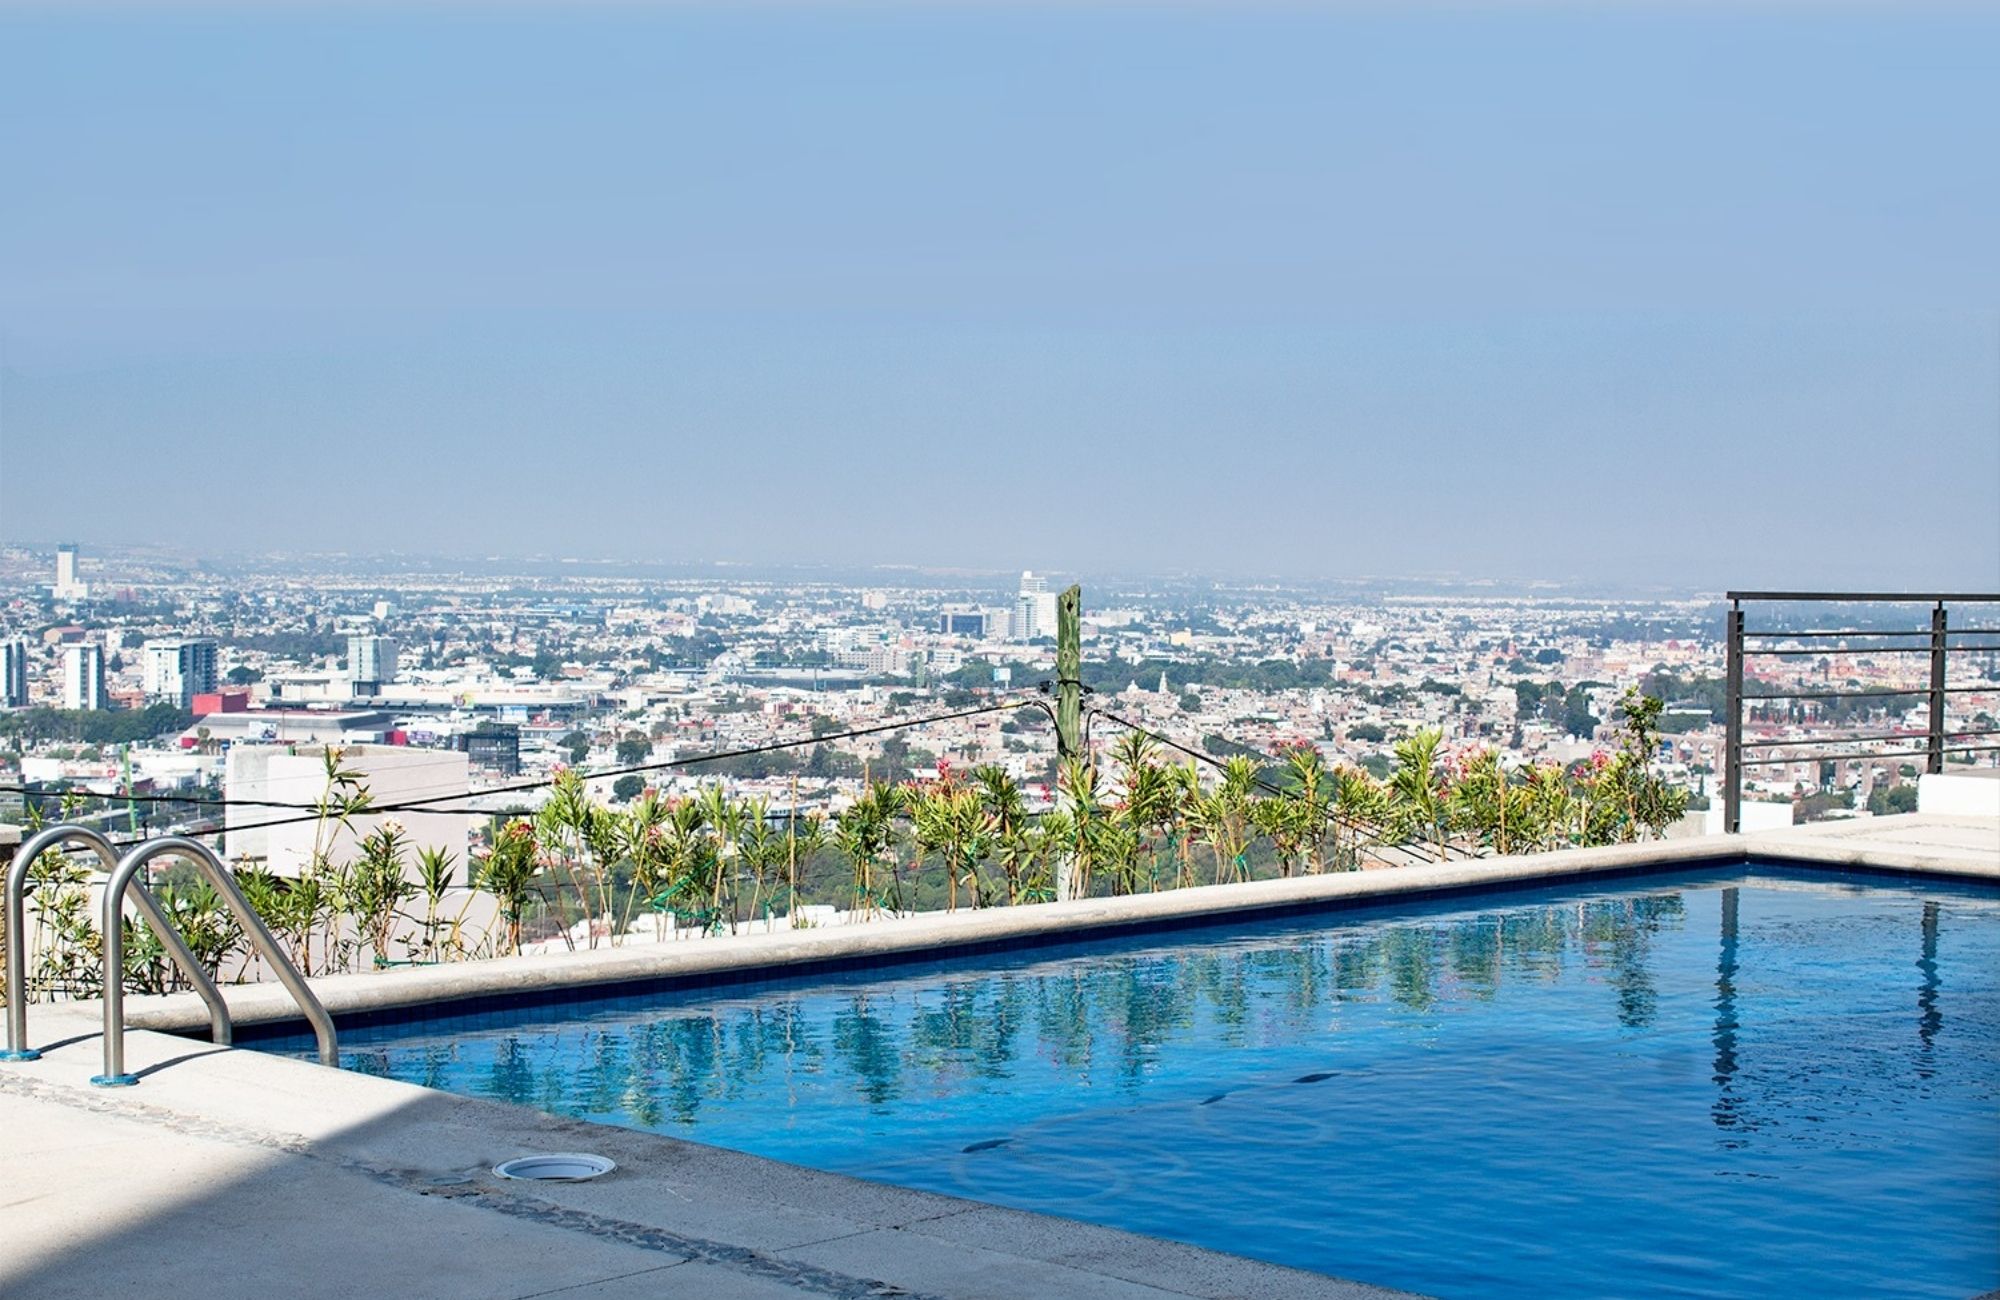 Condominium with large garden, pool, terrace, pet friendly for sale Querétaro.